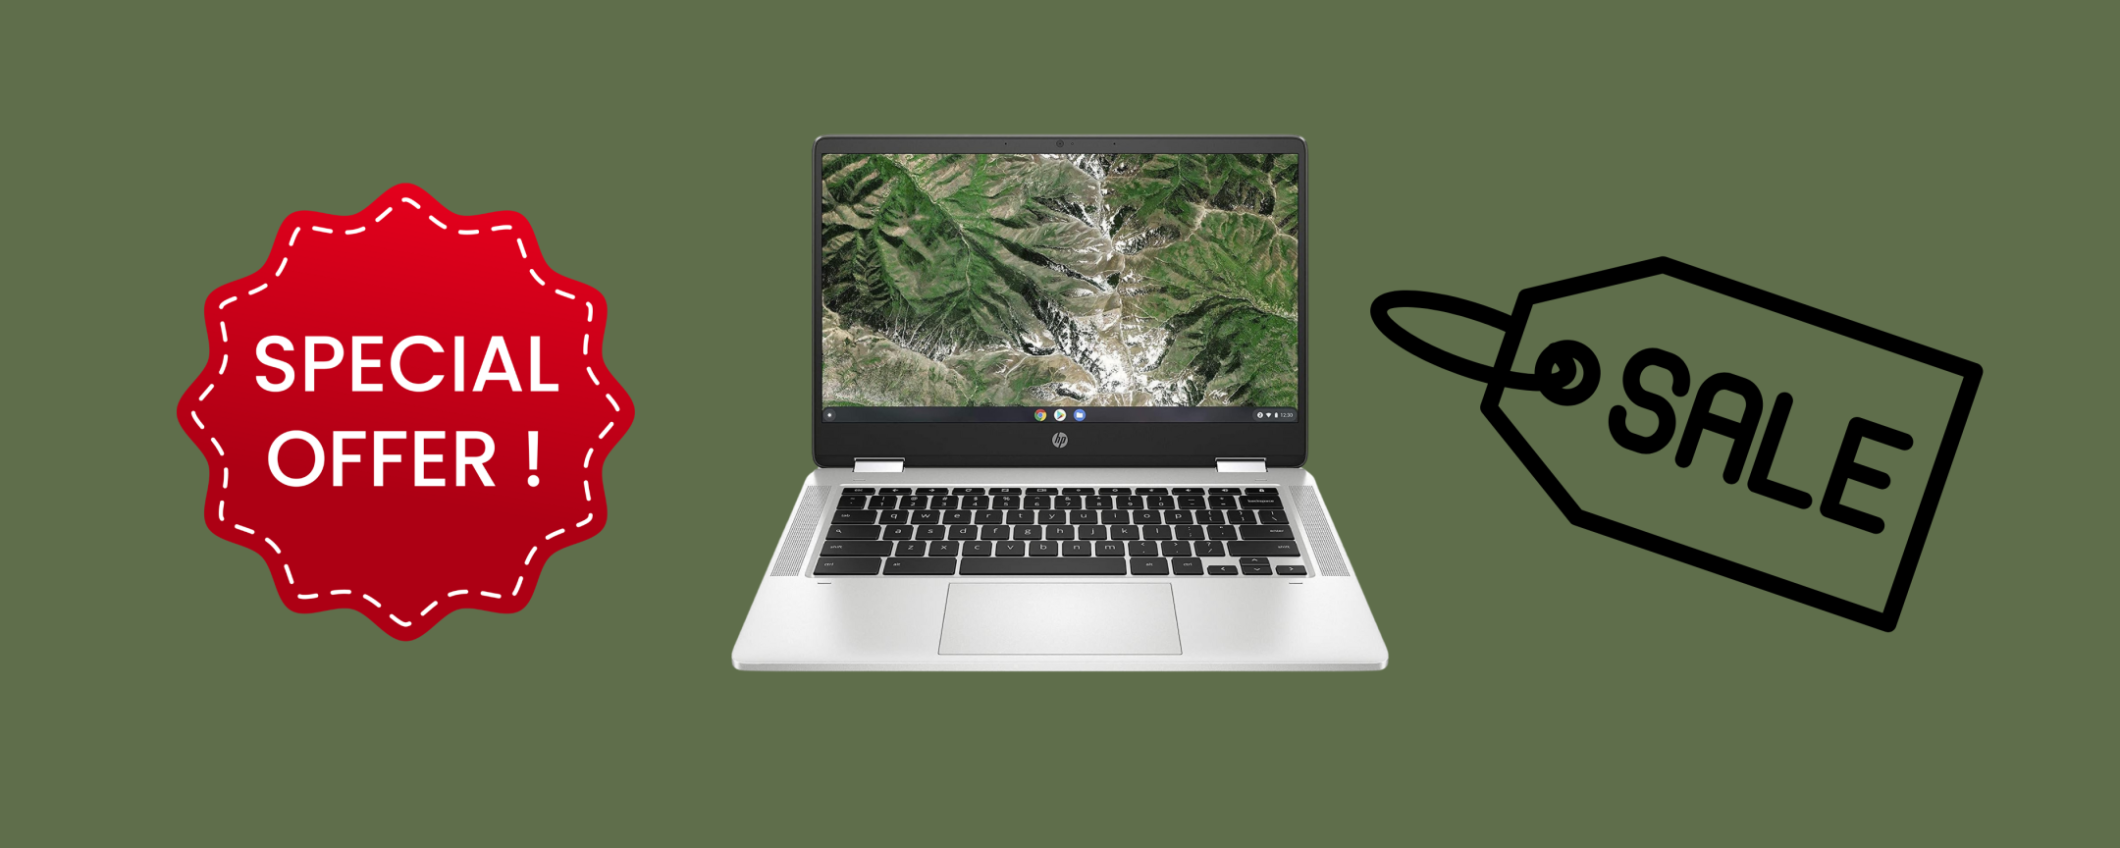 HP Chromebook x360, PERFETTO per lo studio ad un SUPER prezzo